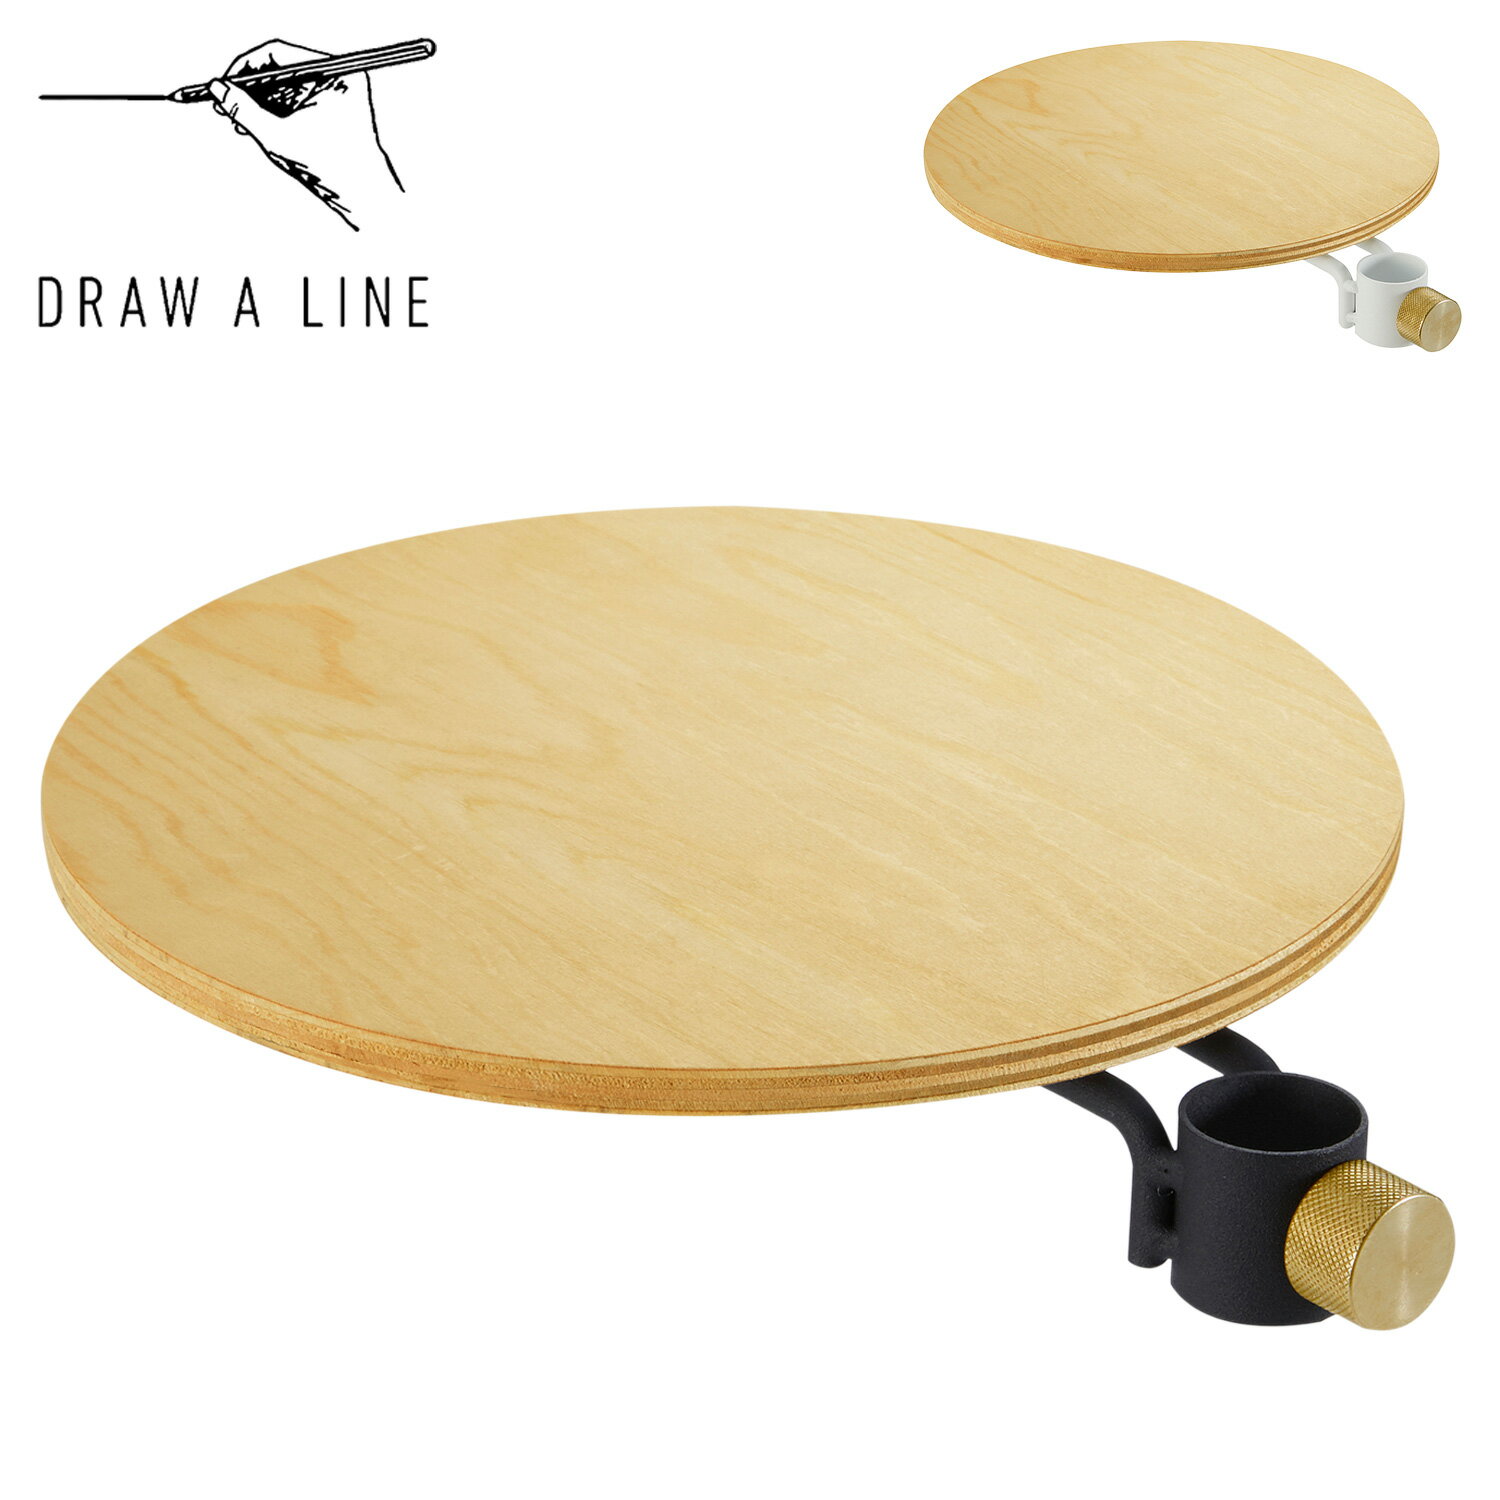 ドローアライン DRAW A LINE テーブル 収納棚 ラック 丸テーブル テーブルA つっぱり棒 伸縮棒 006 Table A 木製 北欧 D-TA